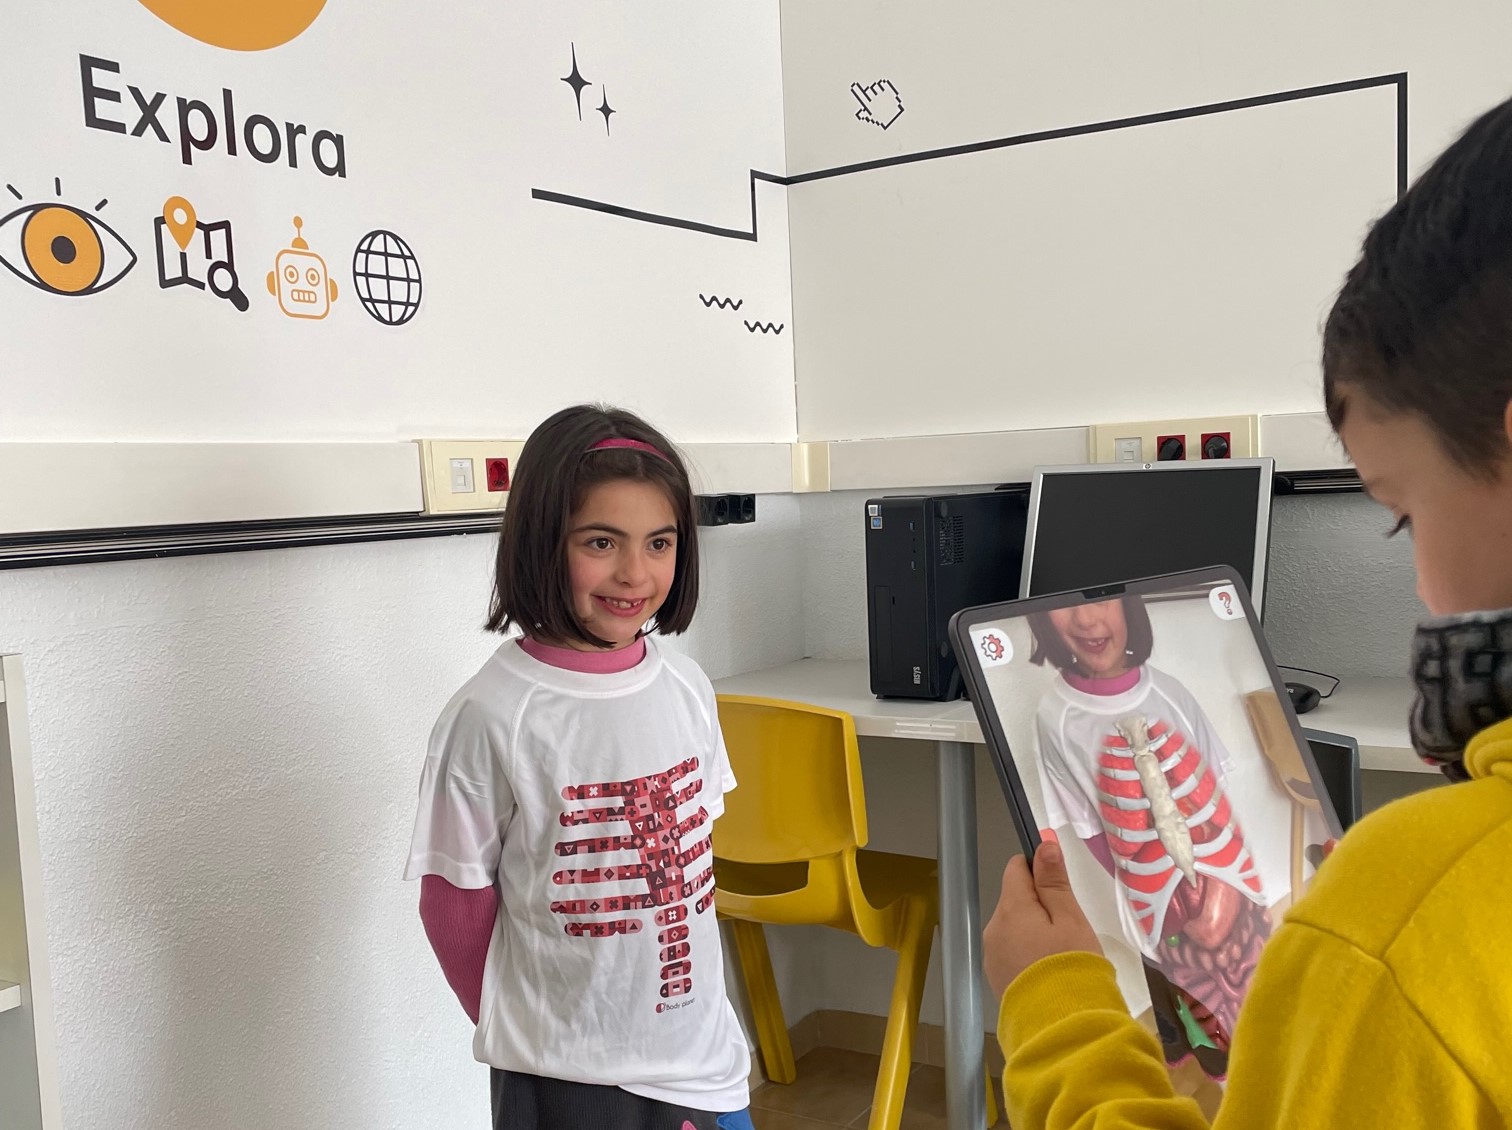 Alumno utilizando realidad aumentada sobre la camiseta de una alumna para explorar el interior del cuerpo humano